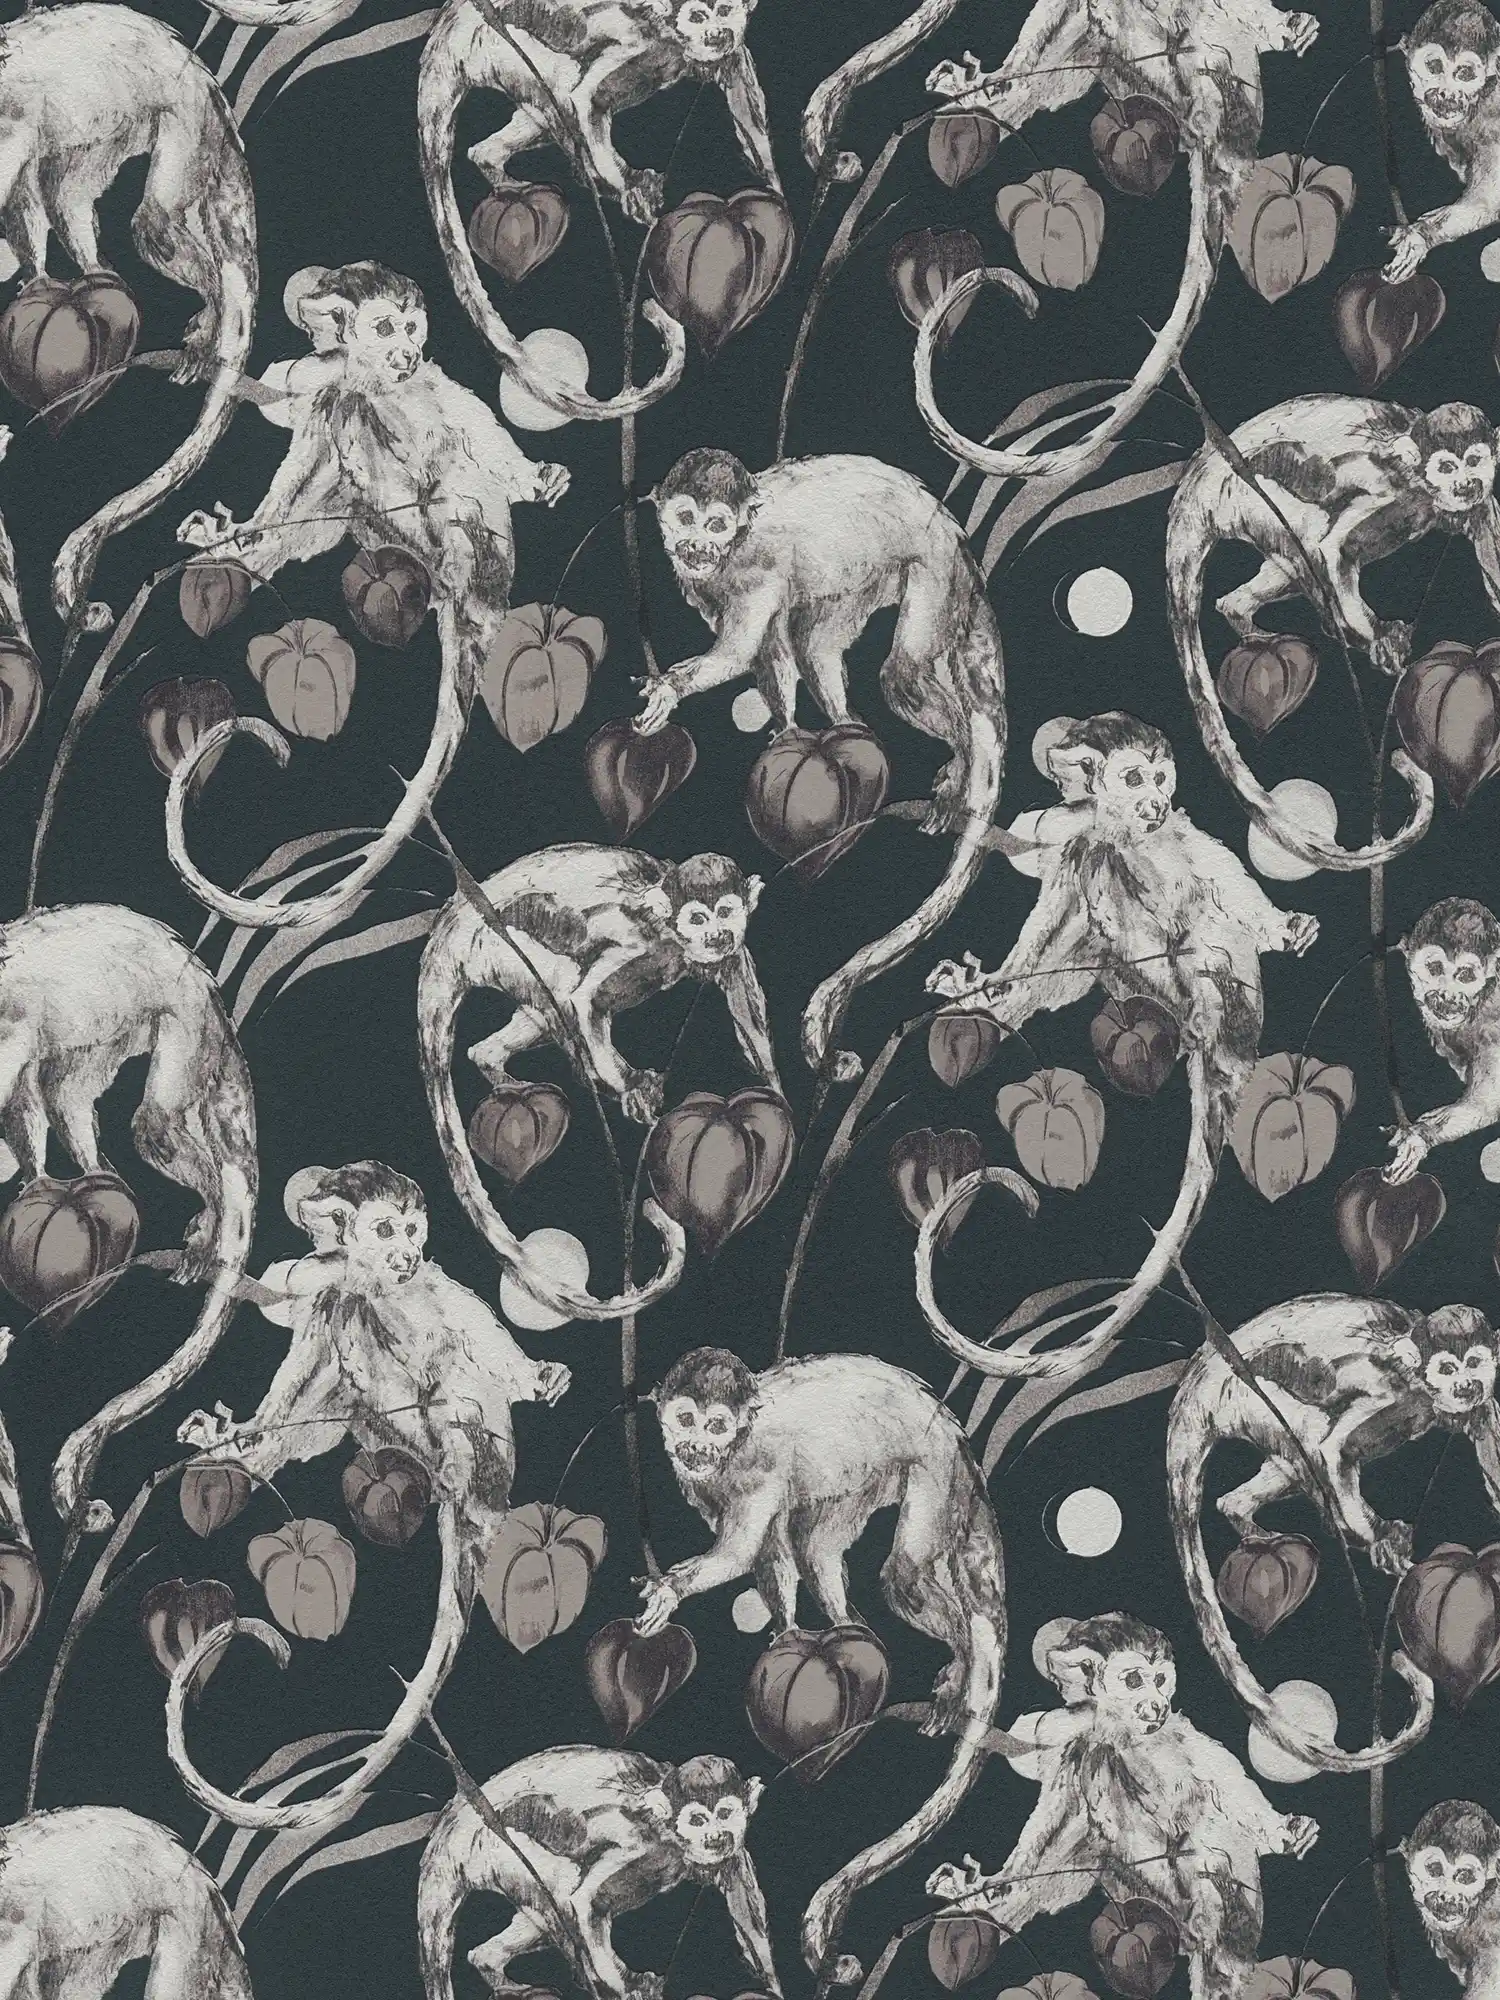         Donker vliesbehang apen & bladeren ontwerp van MICHALSKY
    